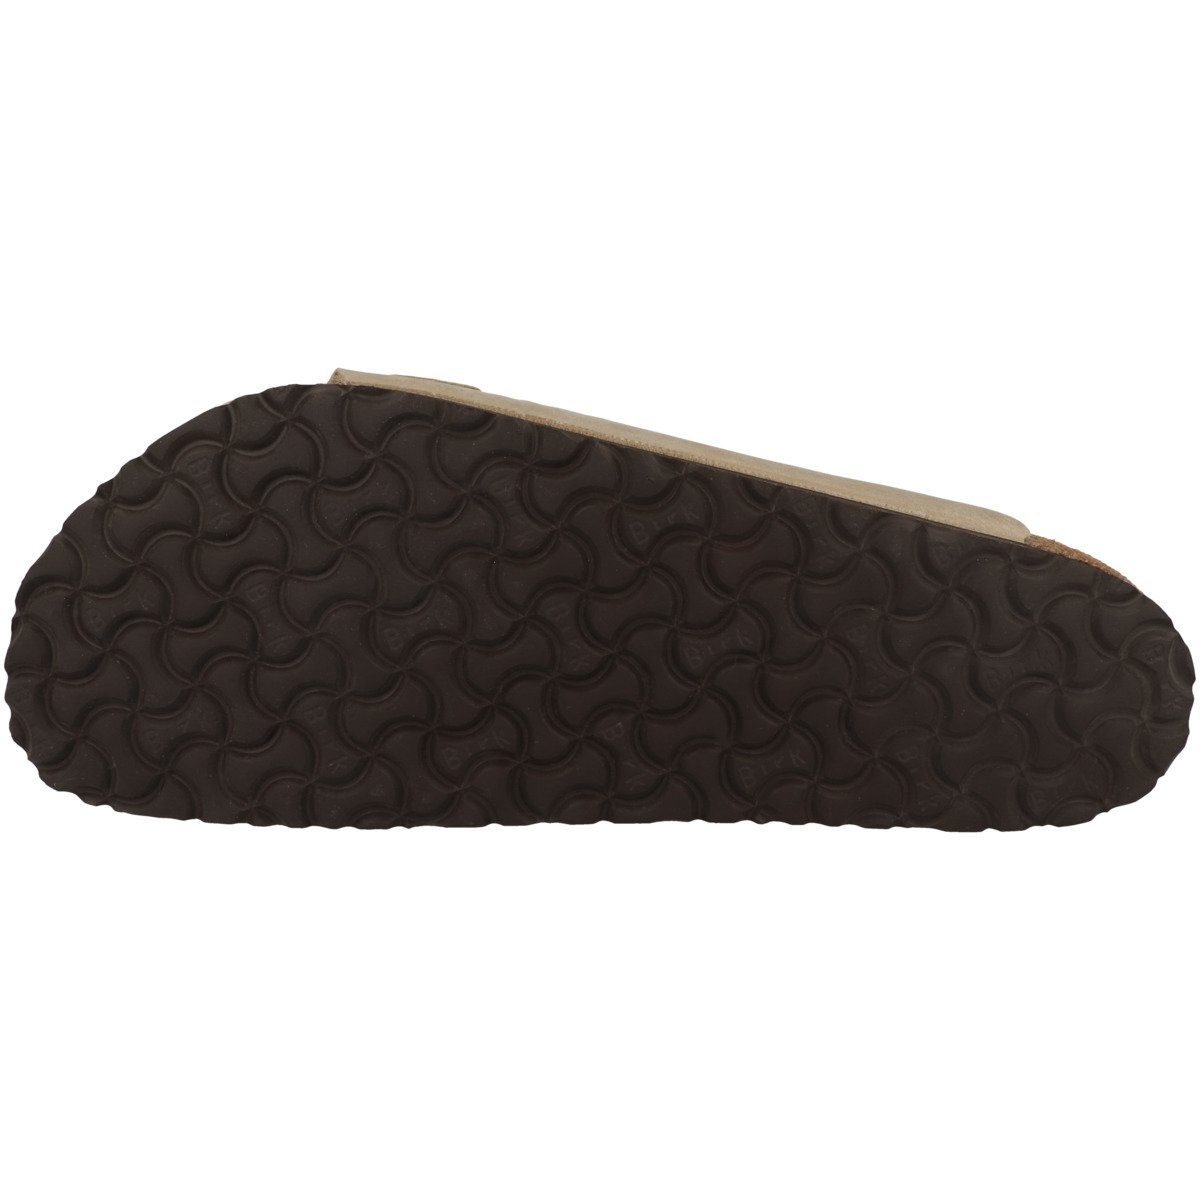 Birkenstock Nubukleder Erwachsene schmal Sandale braun Arizona Unisex